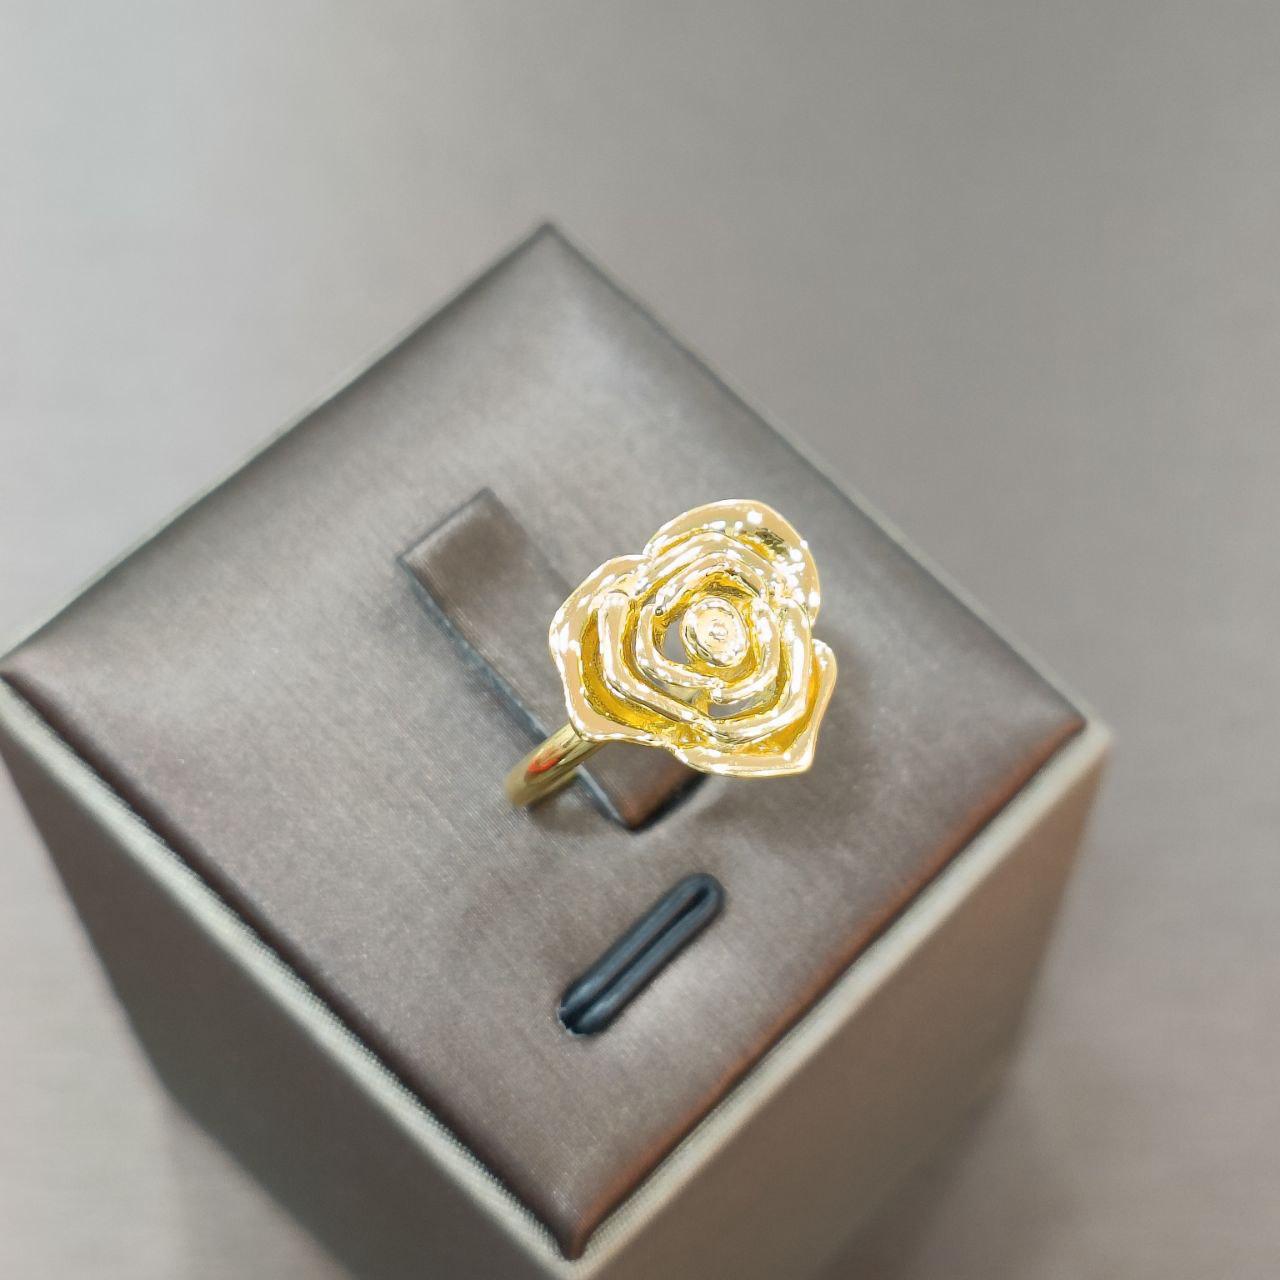 22k / 916 Gold Rose Ring-916 gold-Best Gold Shop